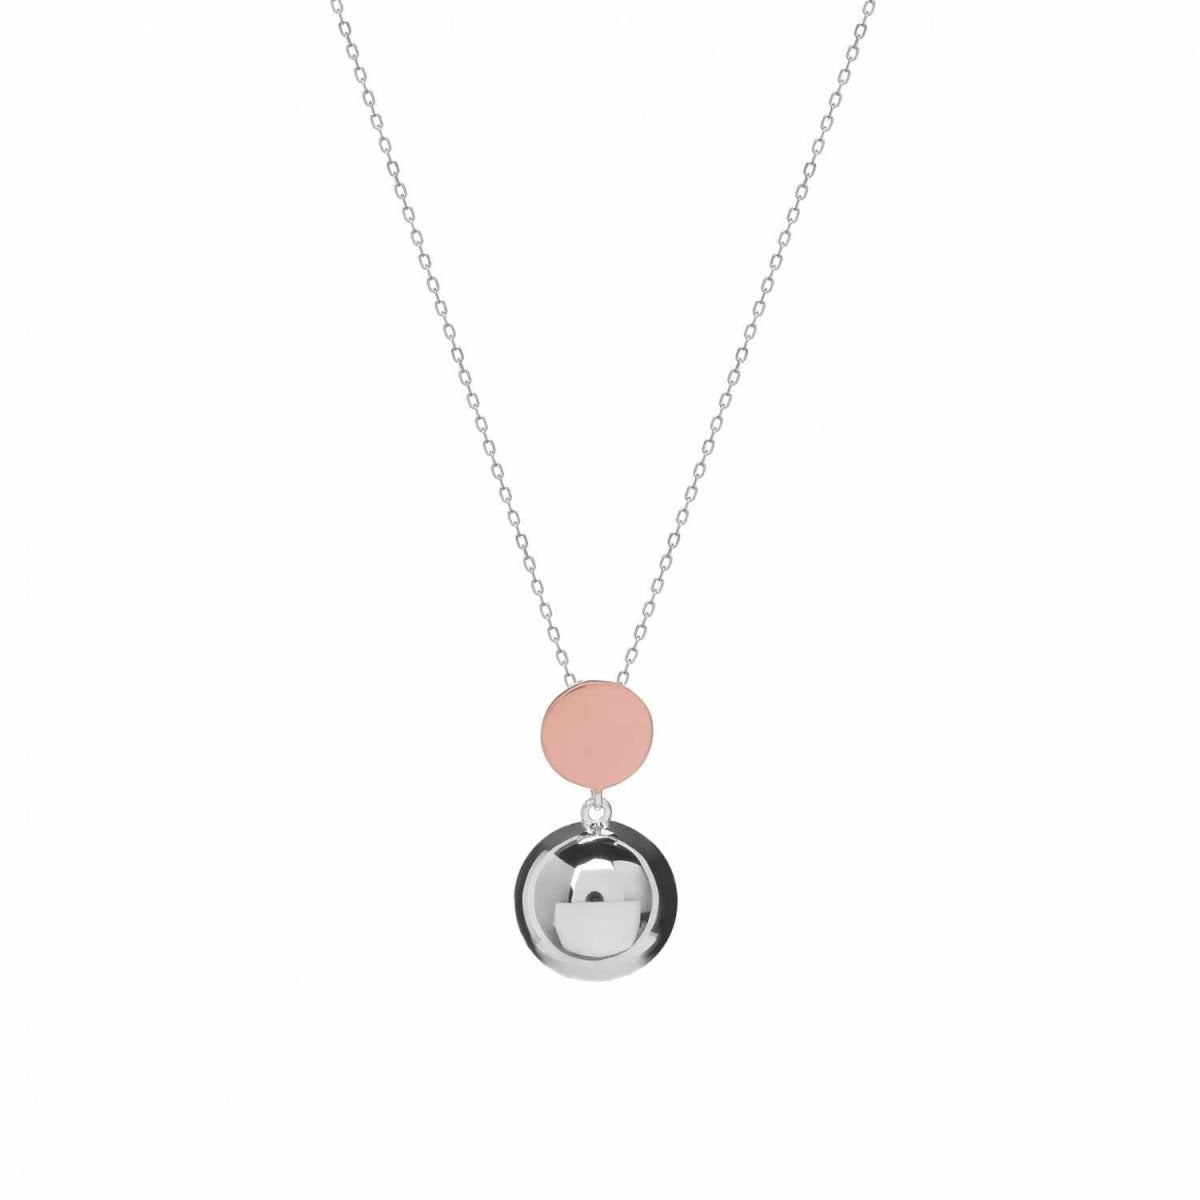 Necklace - Bicolor plain silver pendants with two-piece design